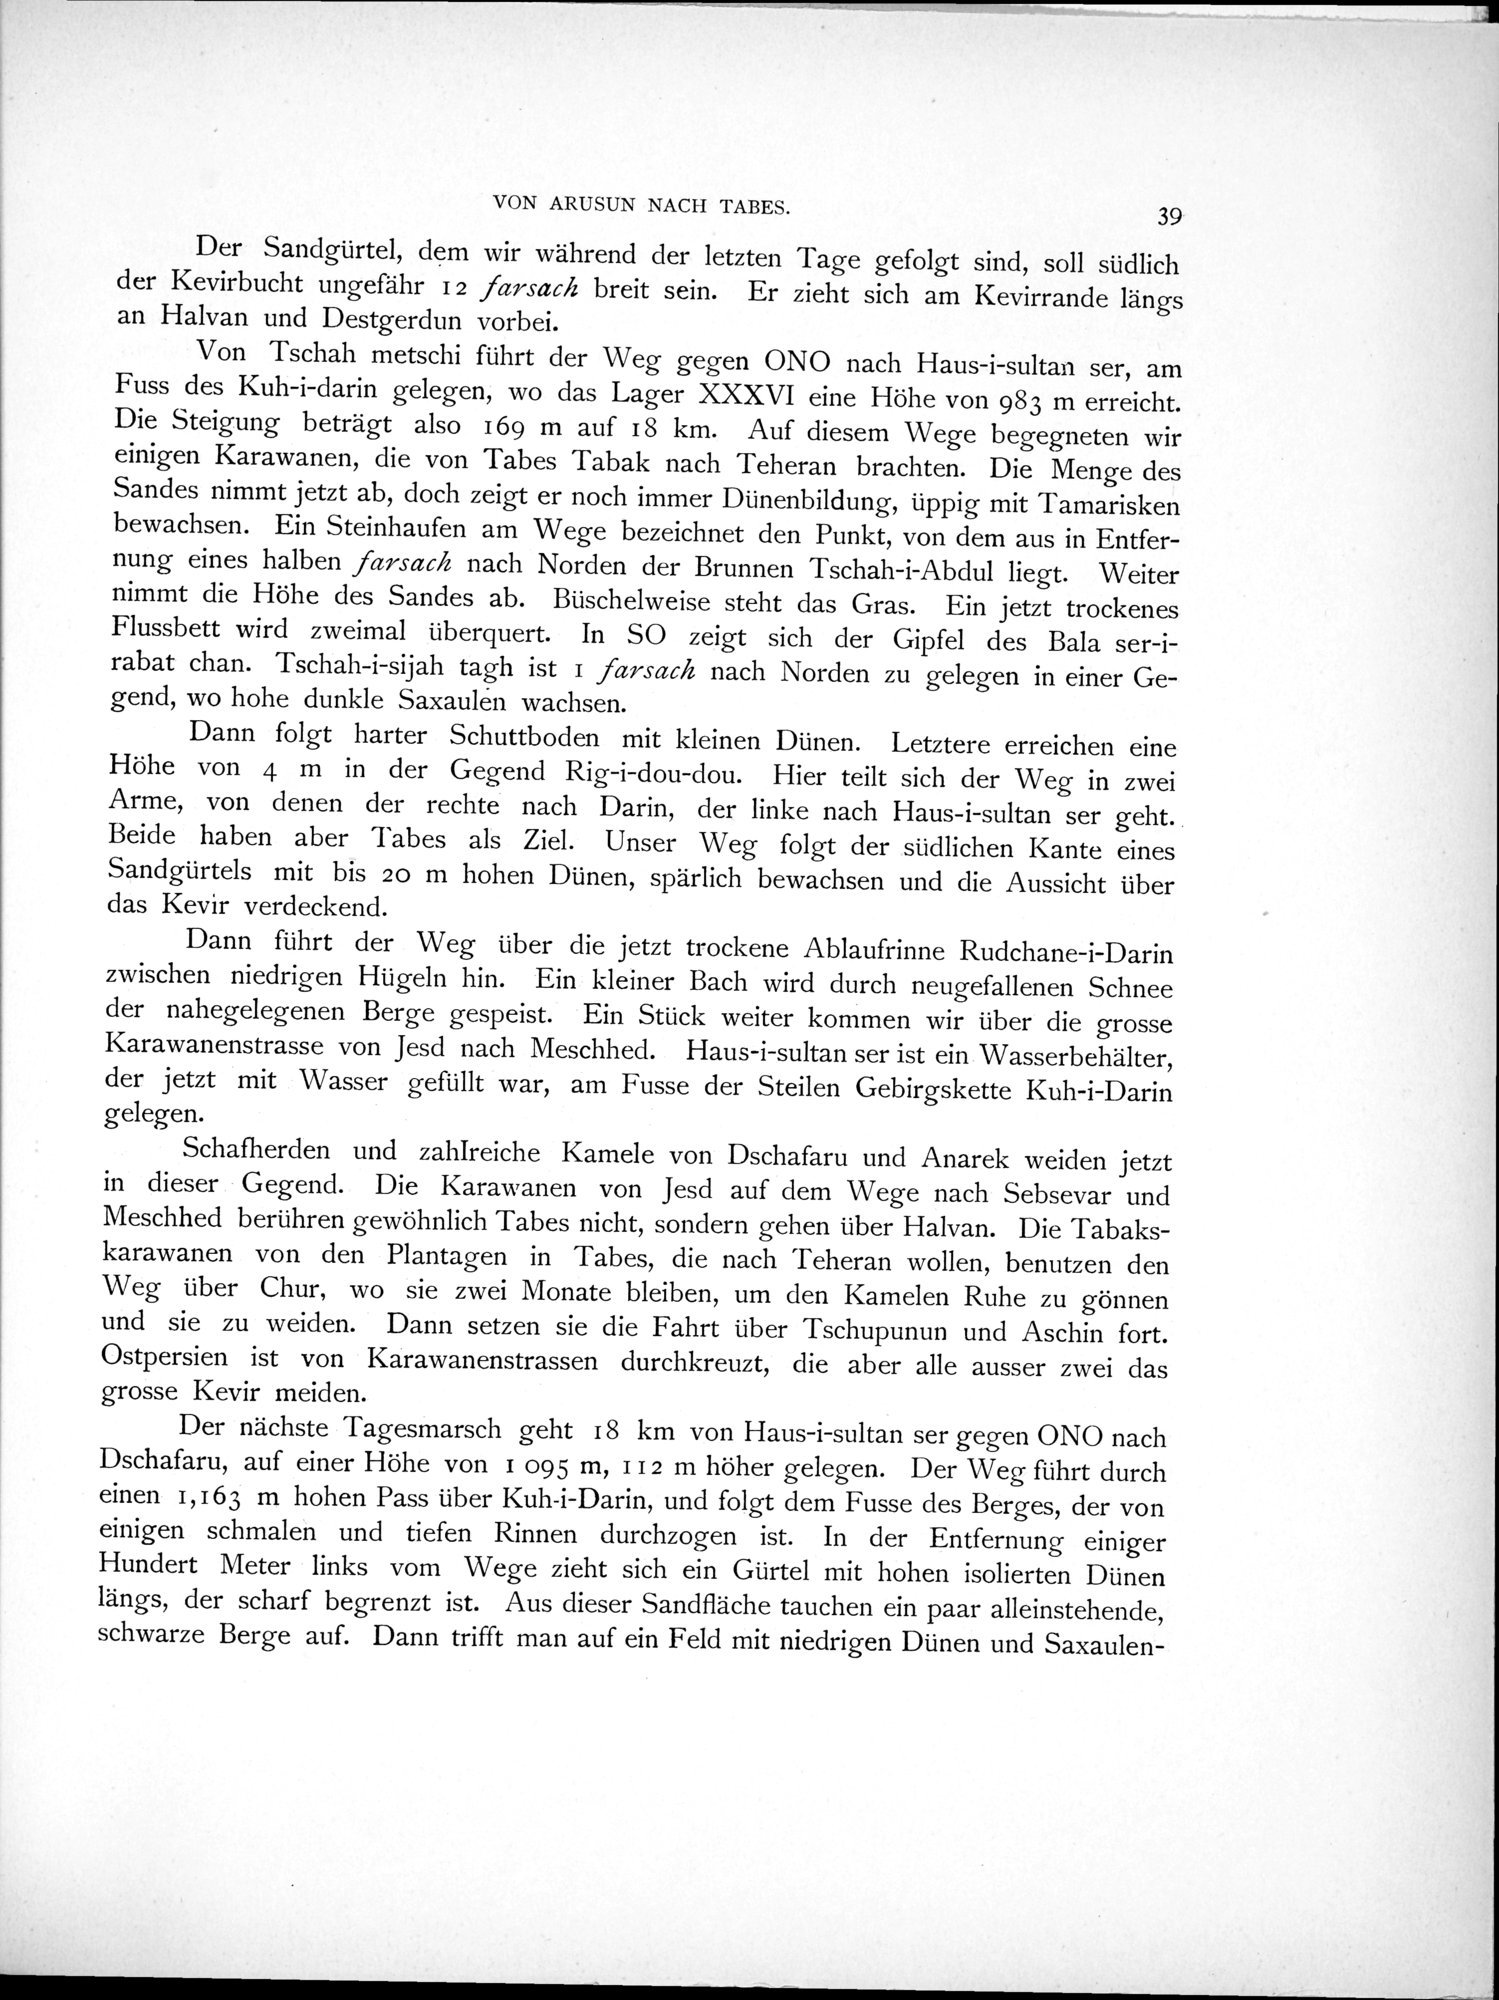 Eine Routenaufnahme durch Ostpersien : vol.1 / Page 111 (Grayscale High Resolution Image)